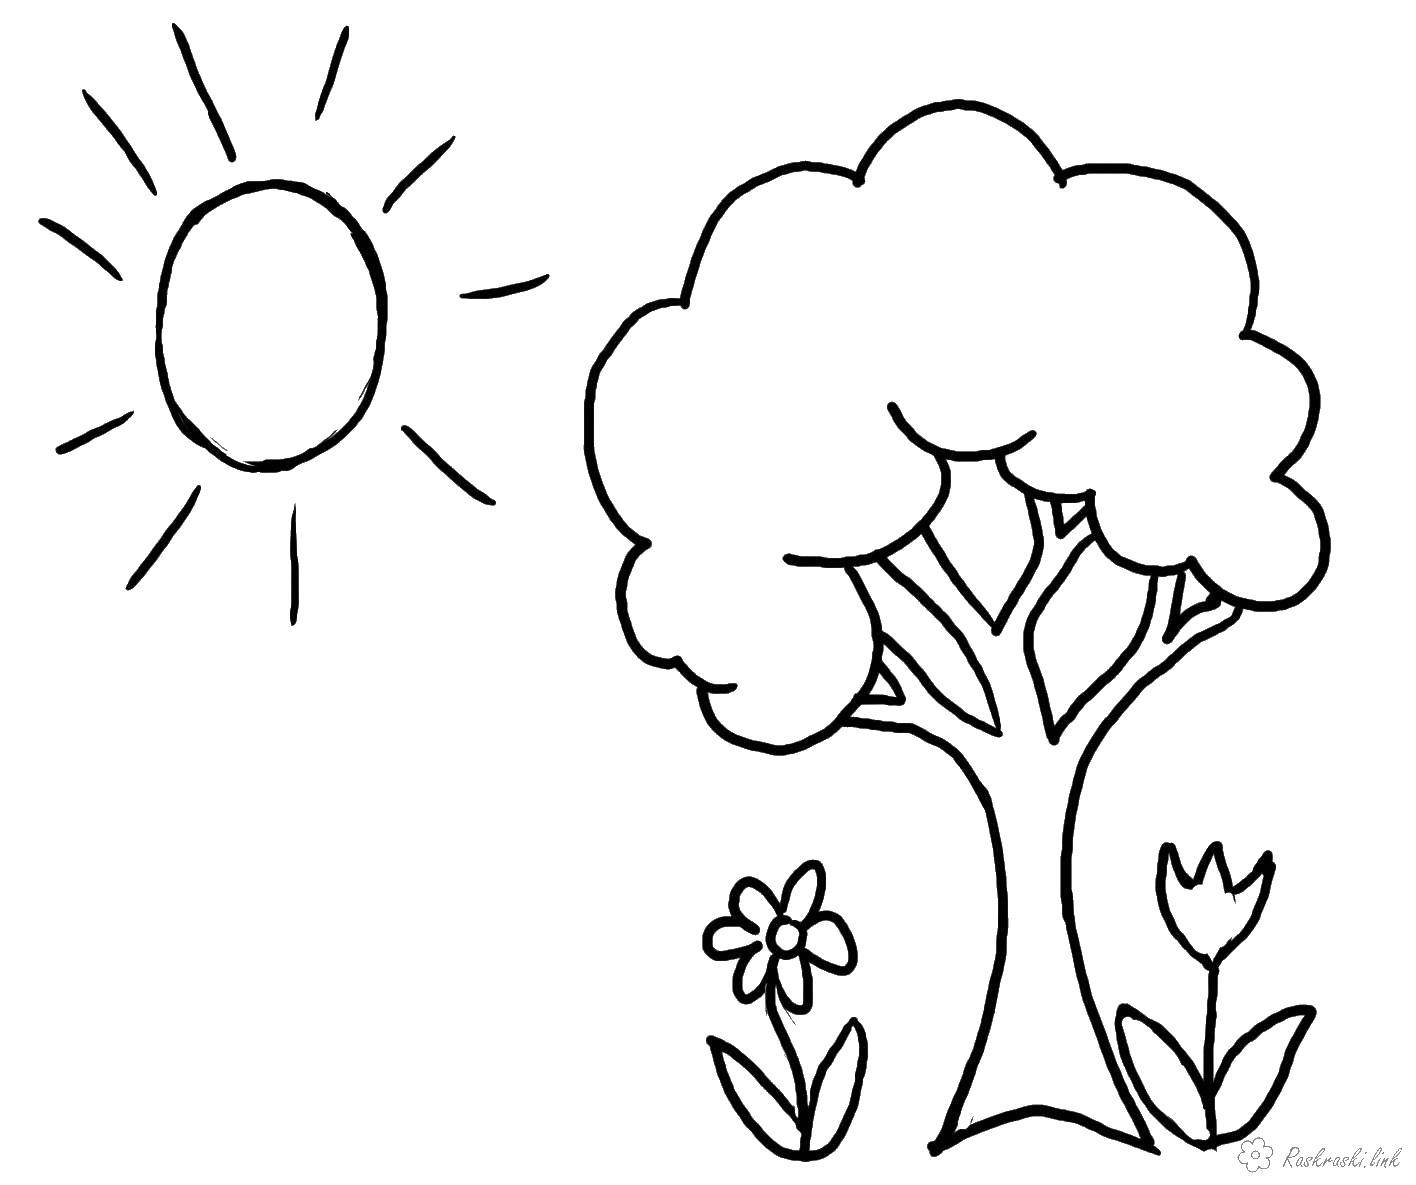 Раскраски на тему весна и дерево: бесплатно скачать и распечатать (весна, дерево)